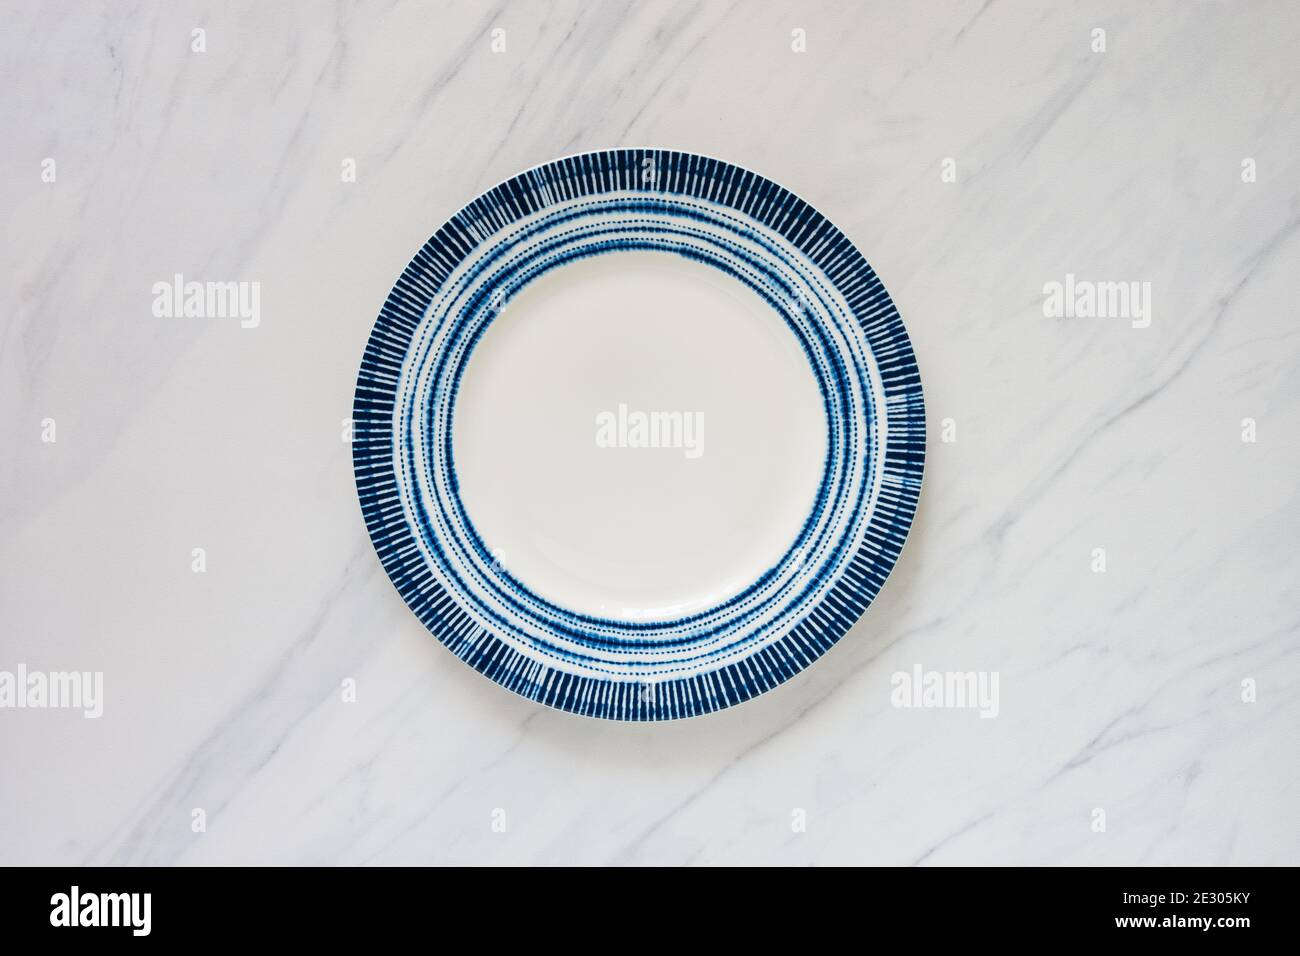 Leere Platte mit blauem runden Design auf Marmor-Tischplatte, Lebensmittel Hintergrund lag flach Bild mit viel Platz für Text kopieren. Stockfoto